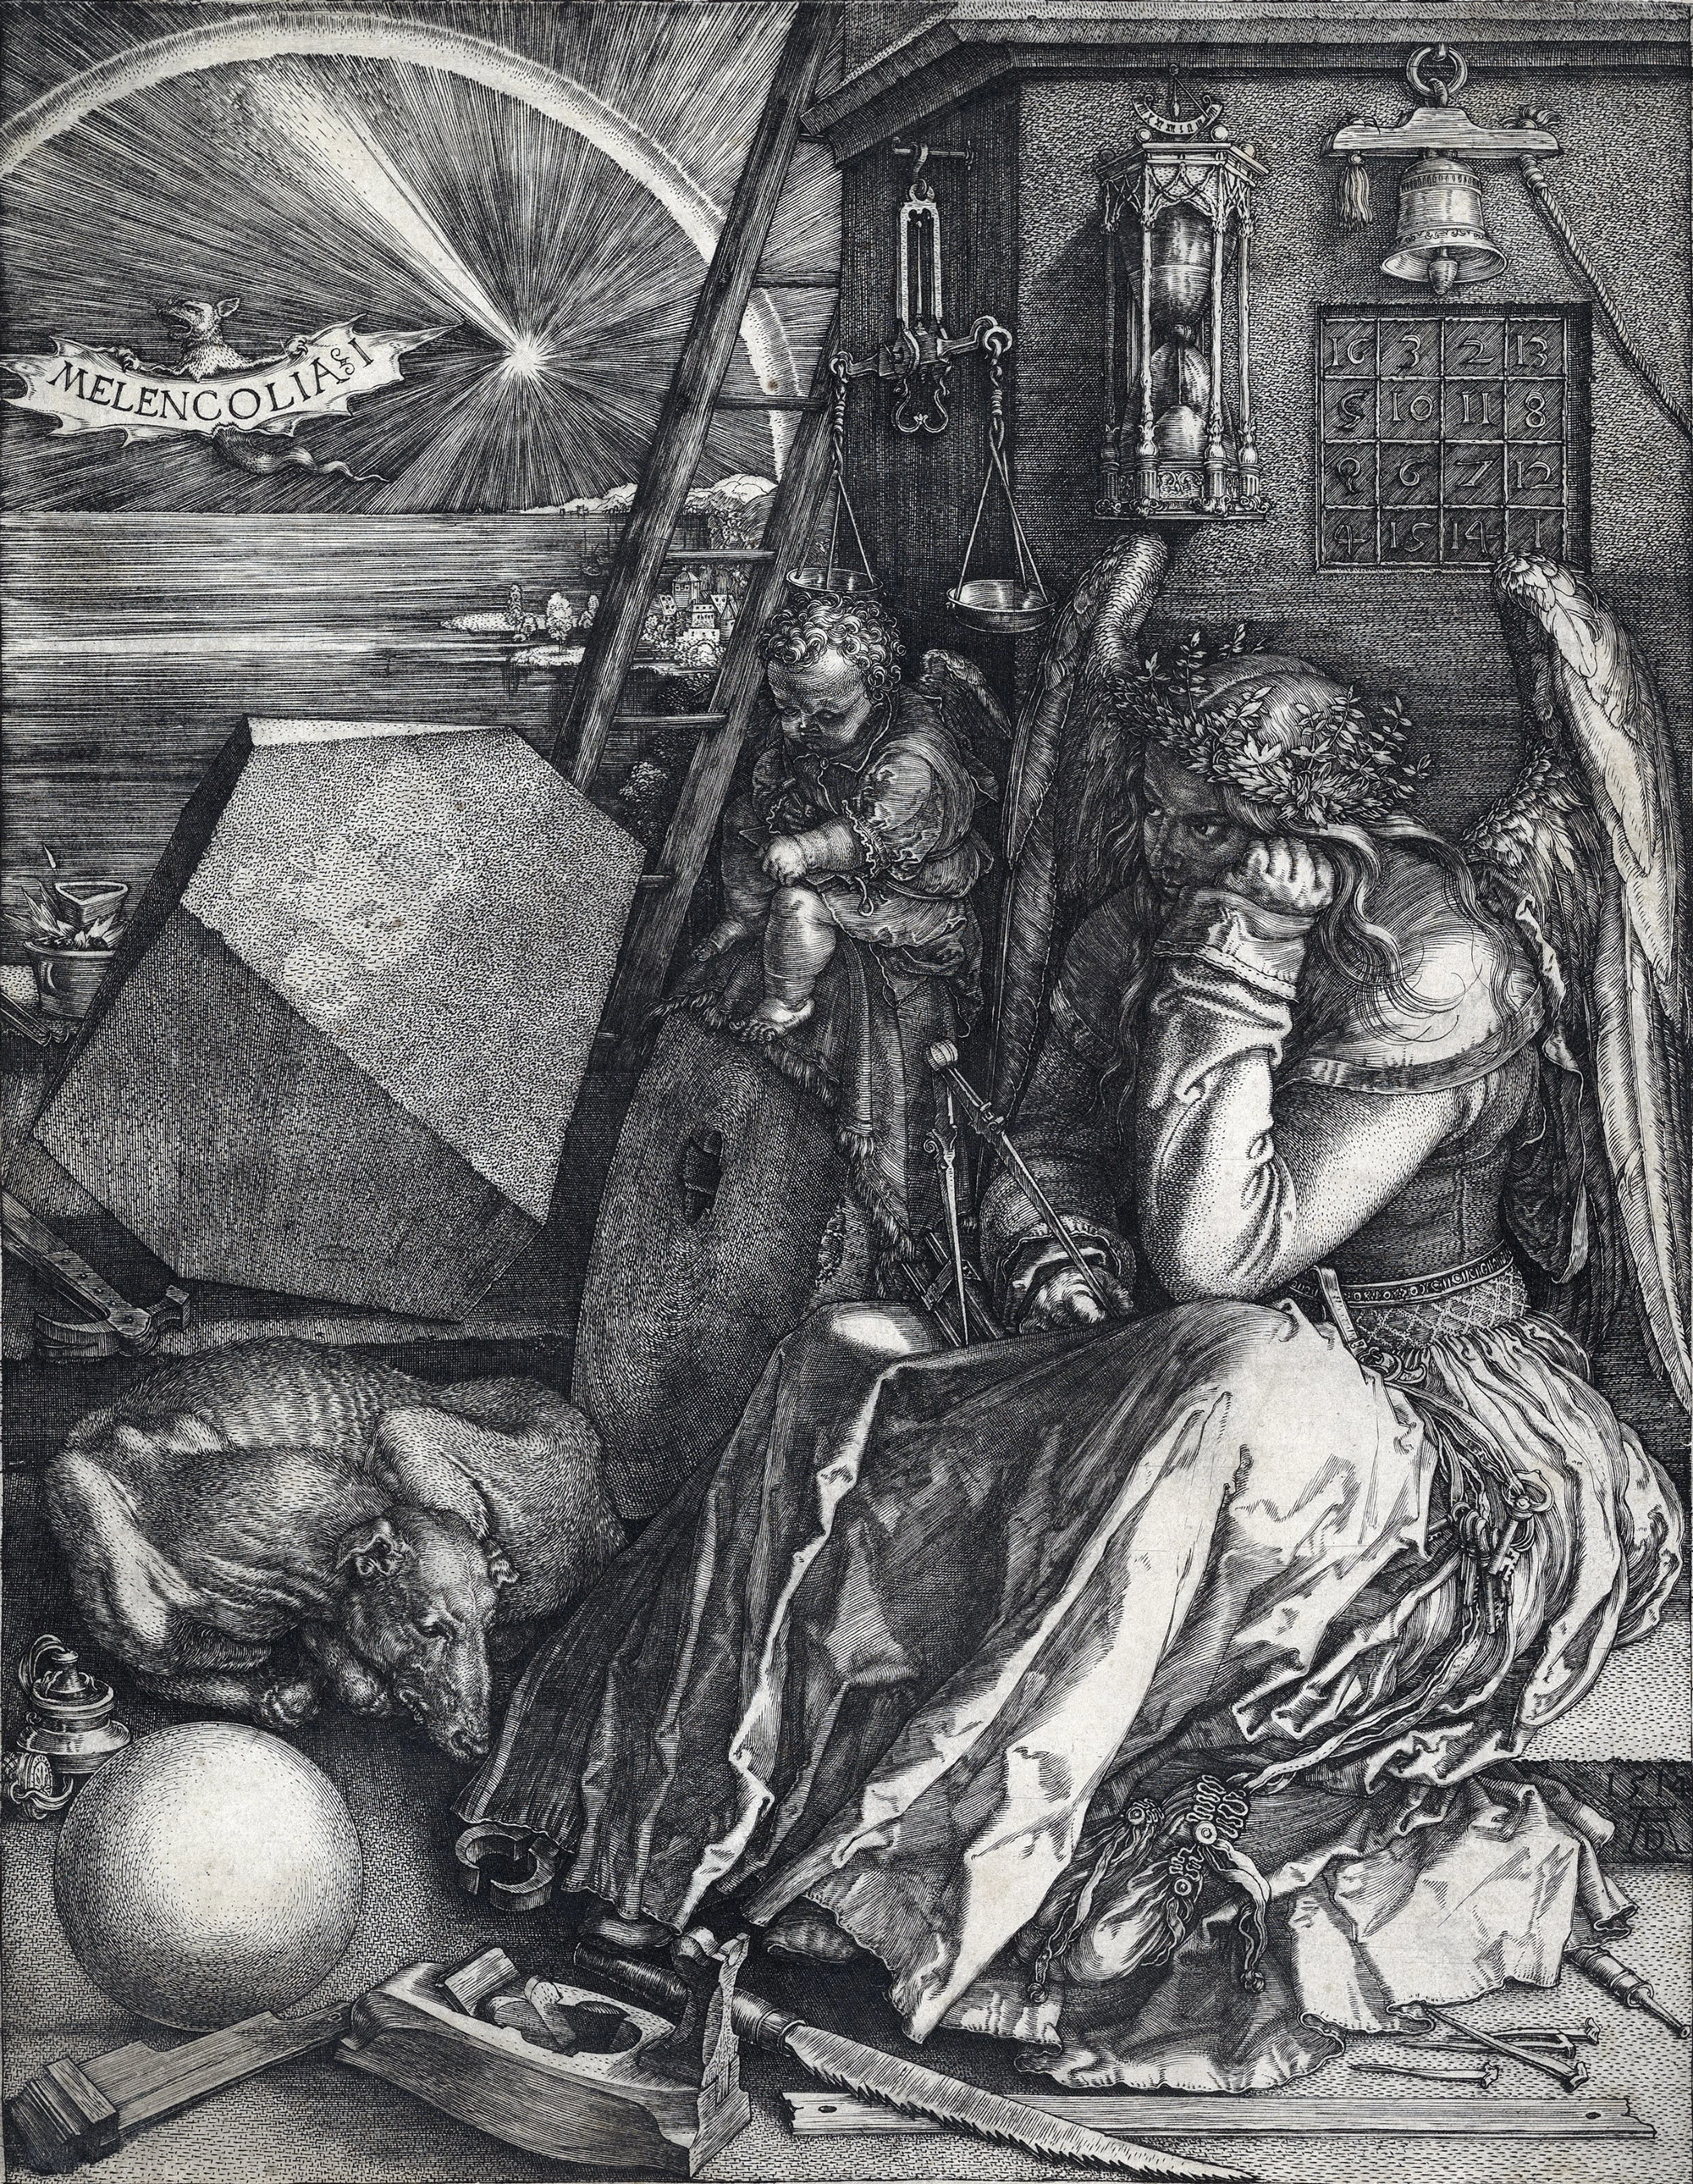 Albrecht Dürer, The Artists